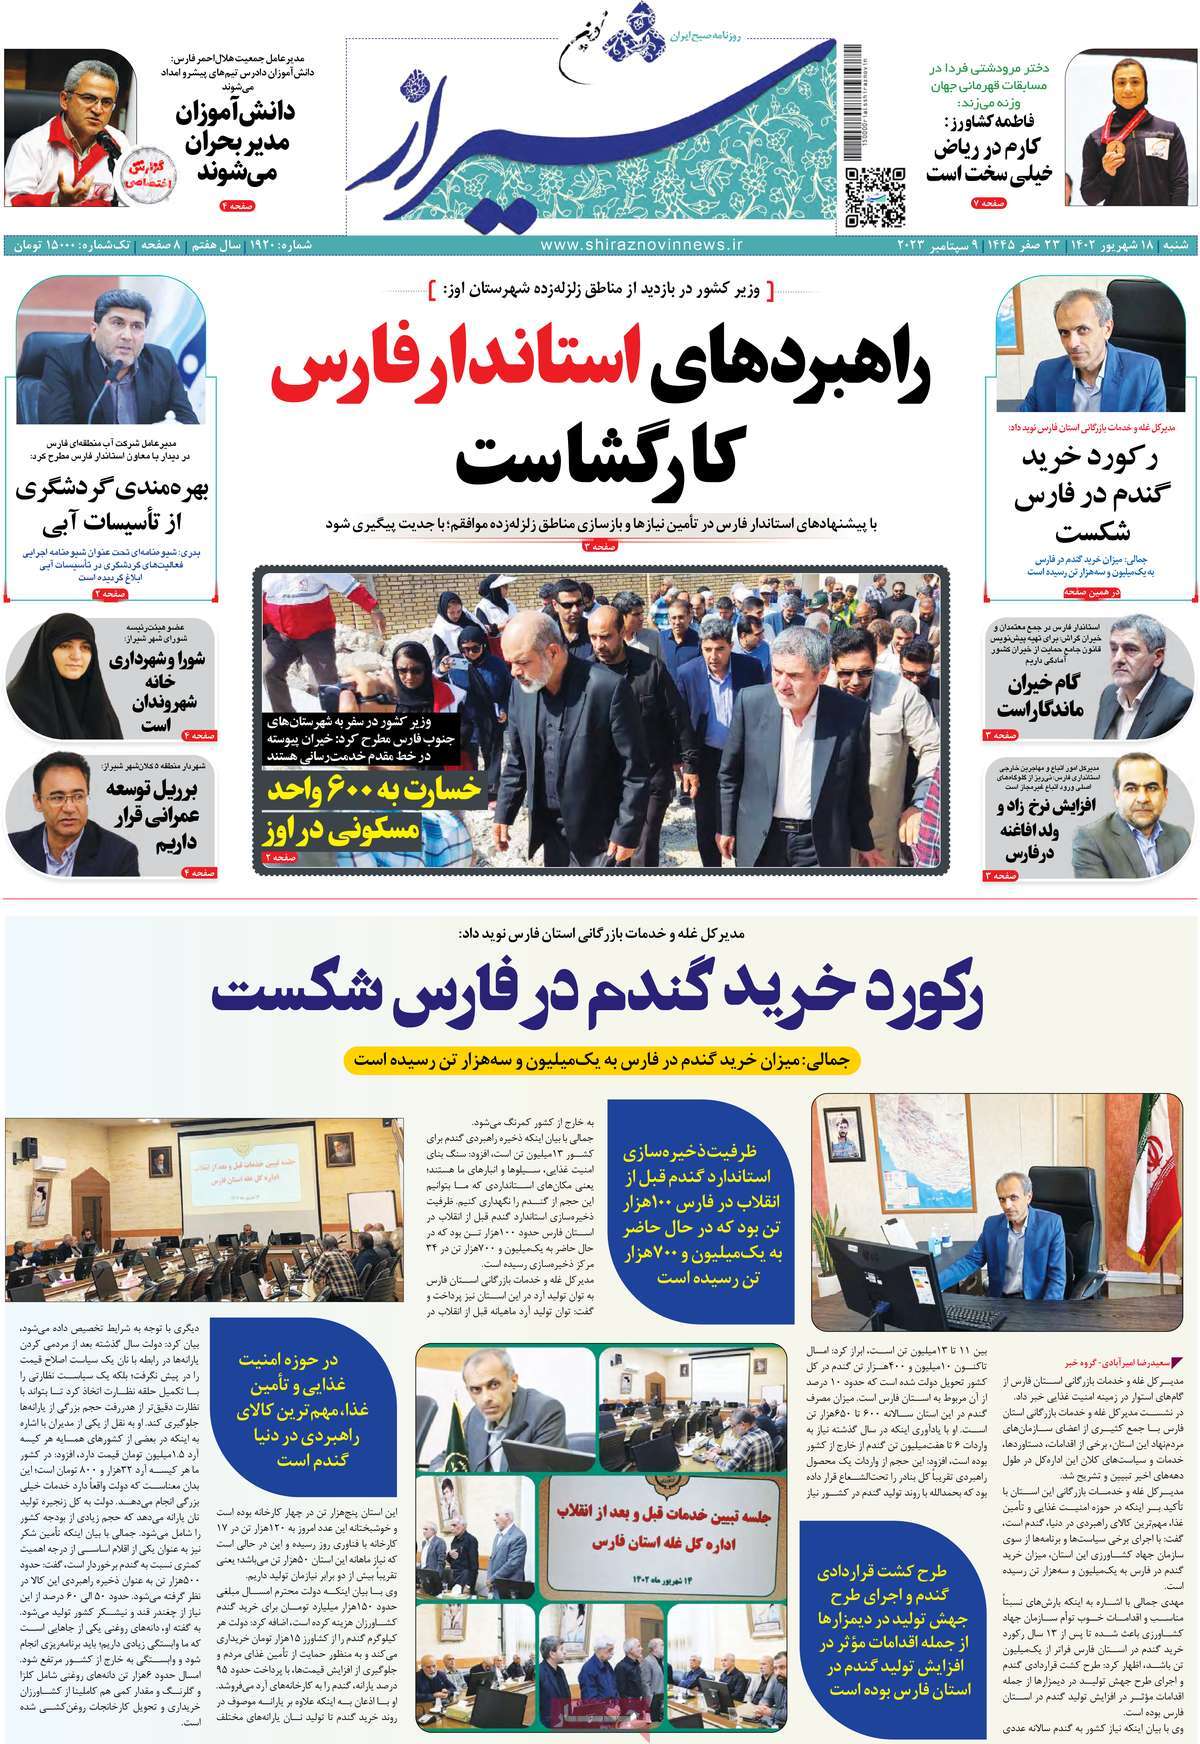 صفحه اول روزنامه های استانی امروز/ روزنامه شیراز نوین